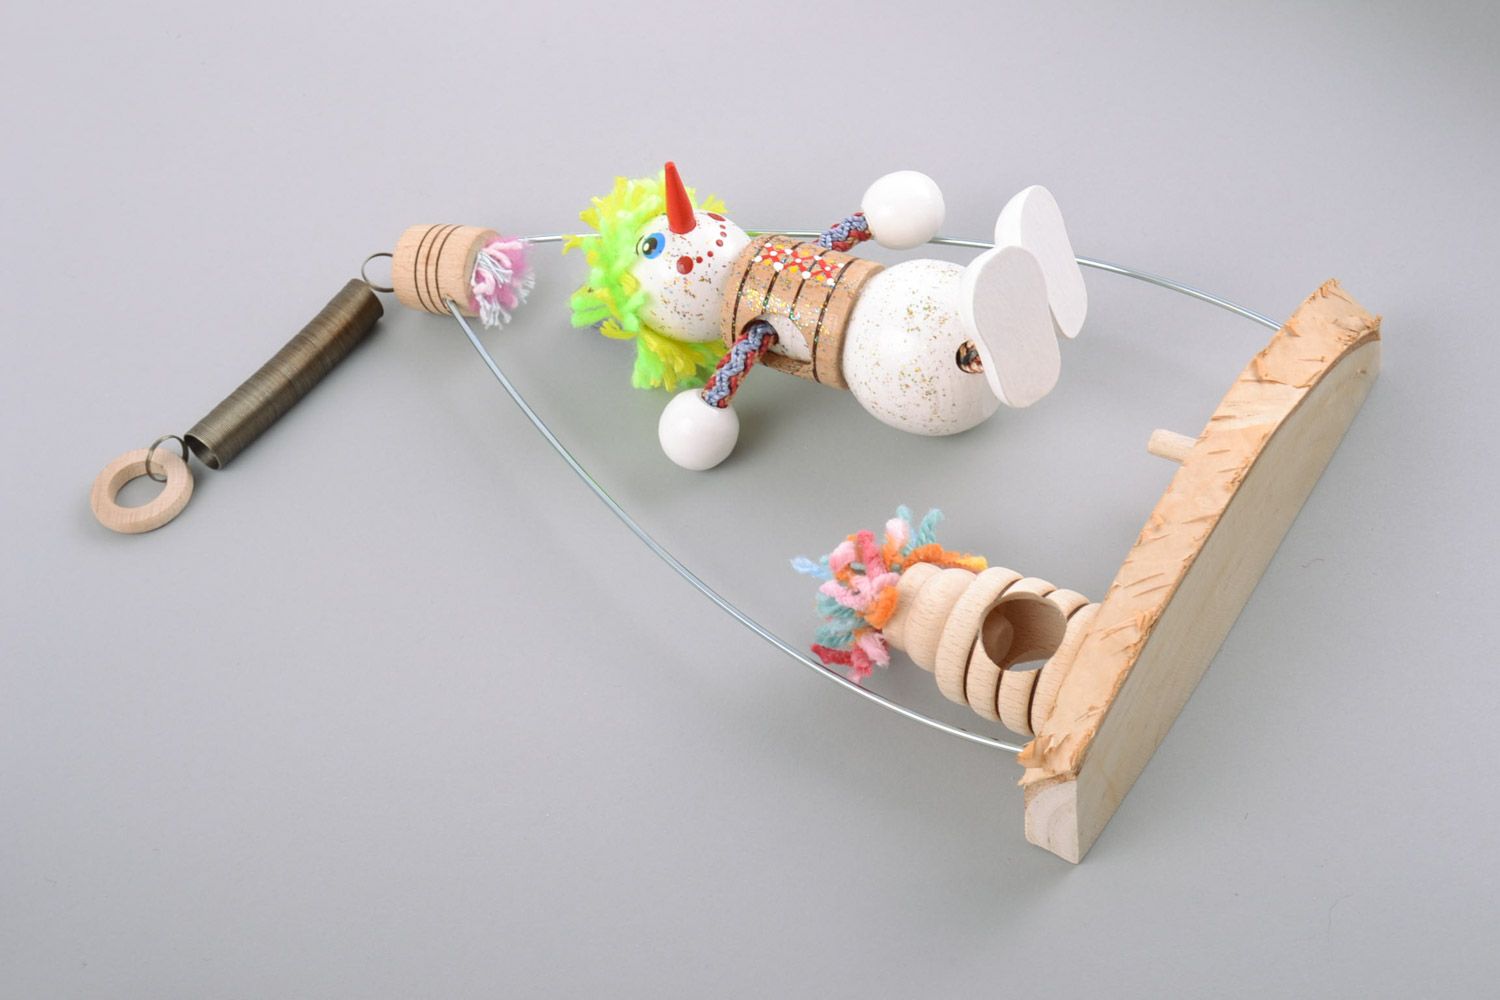 Деревянная игрушка расписанная красками в виде внеговика ручной работы фото 5